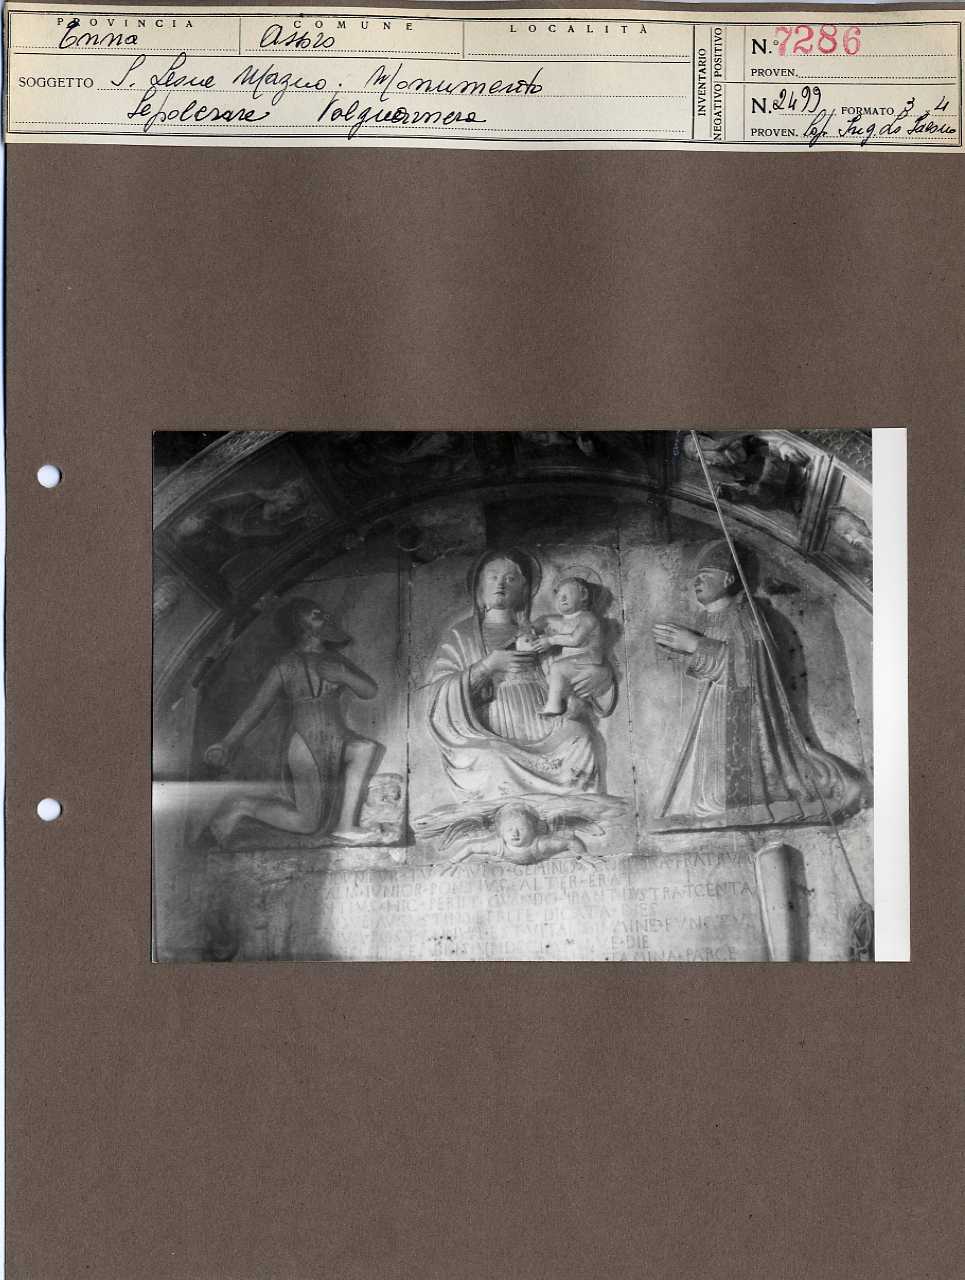 Sicilia - Enna <provincia> - Assoro - Chiese - Monumenti sepolcrali (positivo, elemento-parte componente, scheda di supporto) di Anonimo <1951 - 2000> (terzo quarto XX)